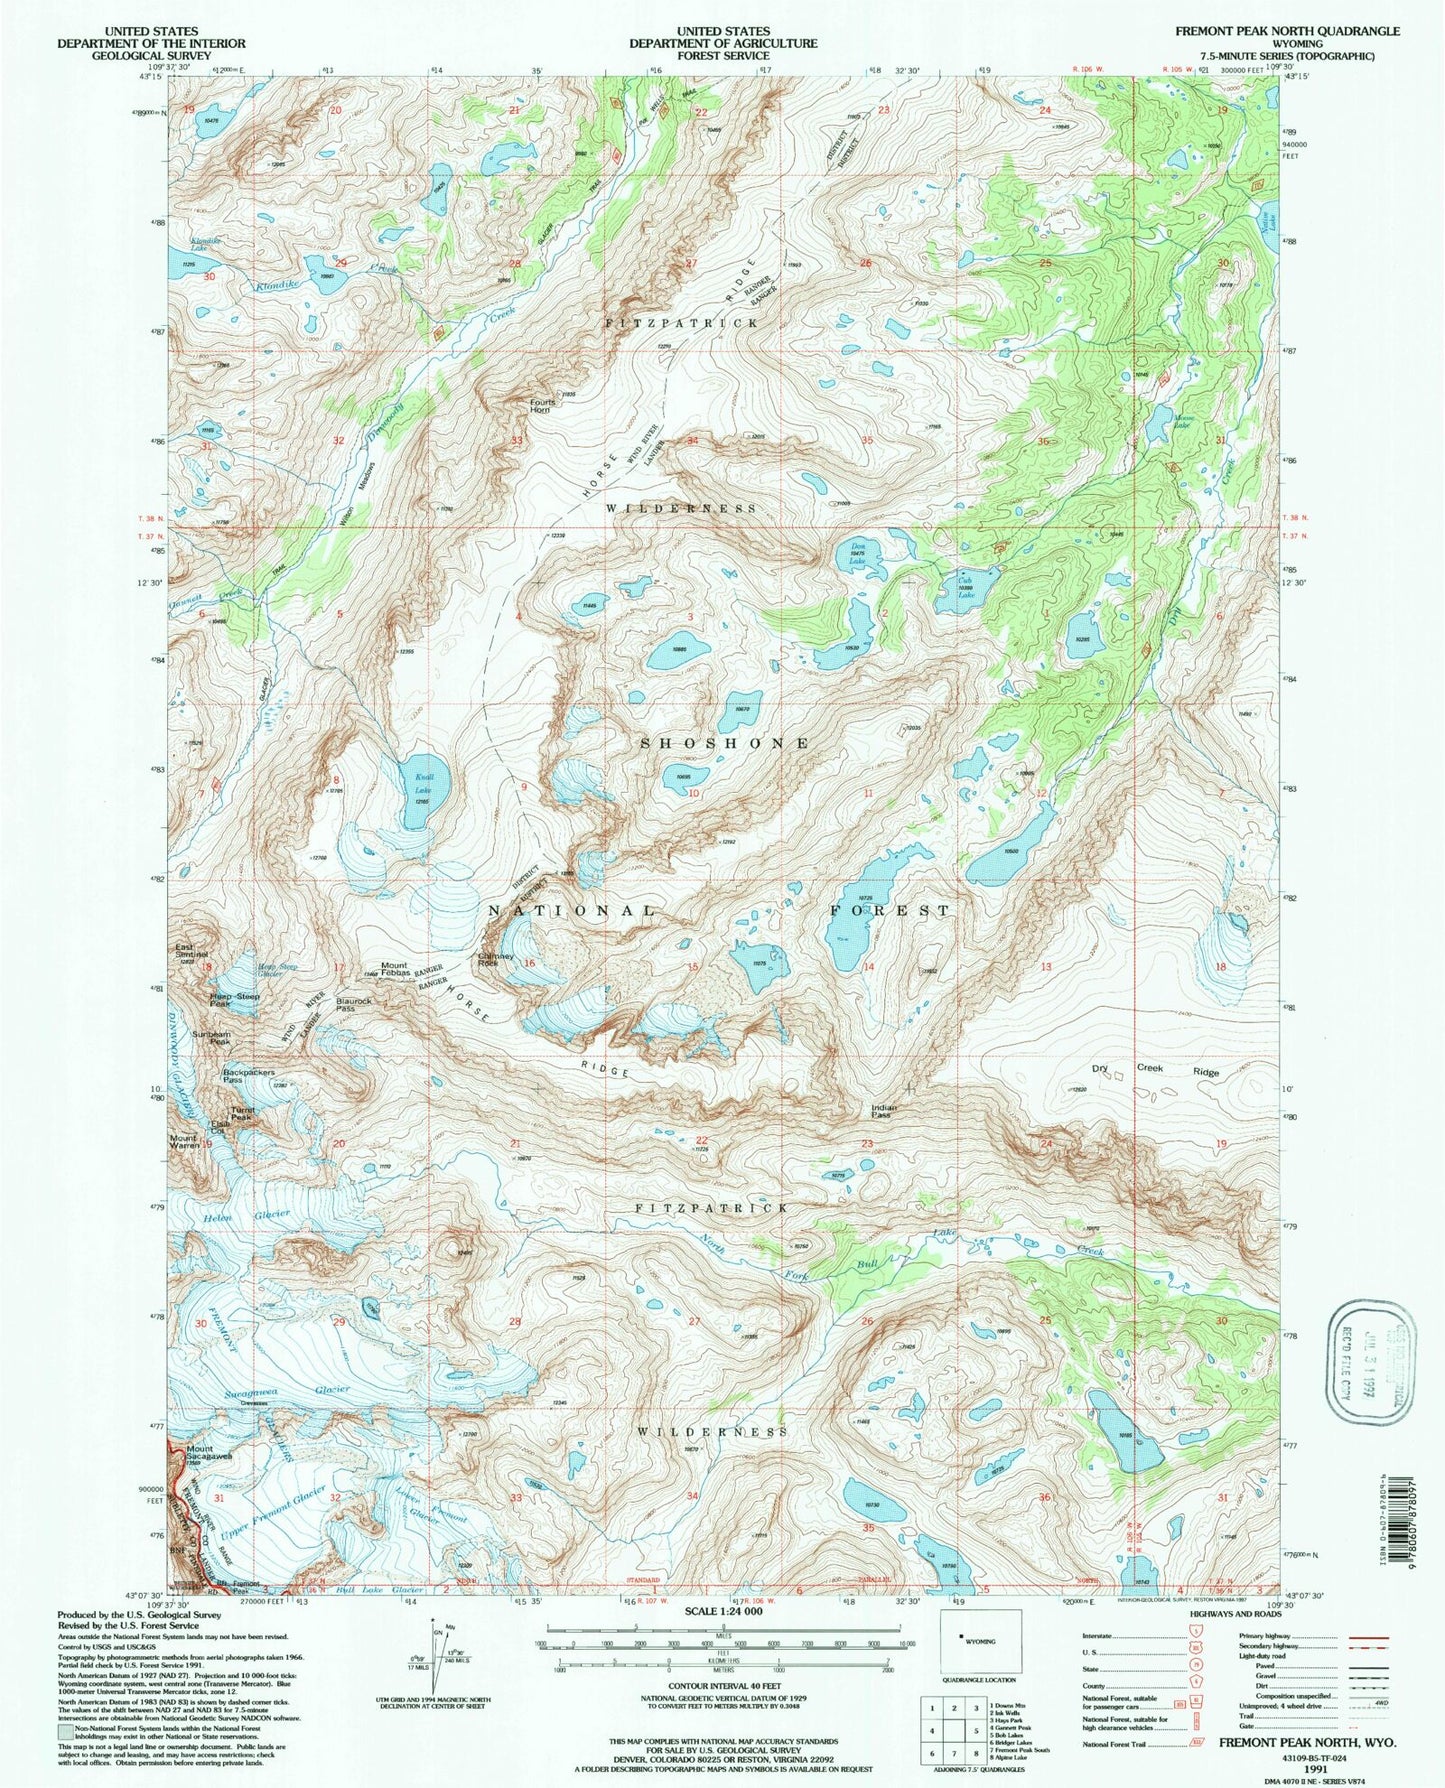 USGS Classic Fremont Peak North Wyoming 7.5'x7.5' Topo Map Image